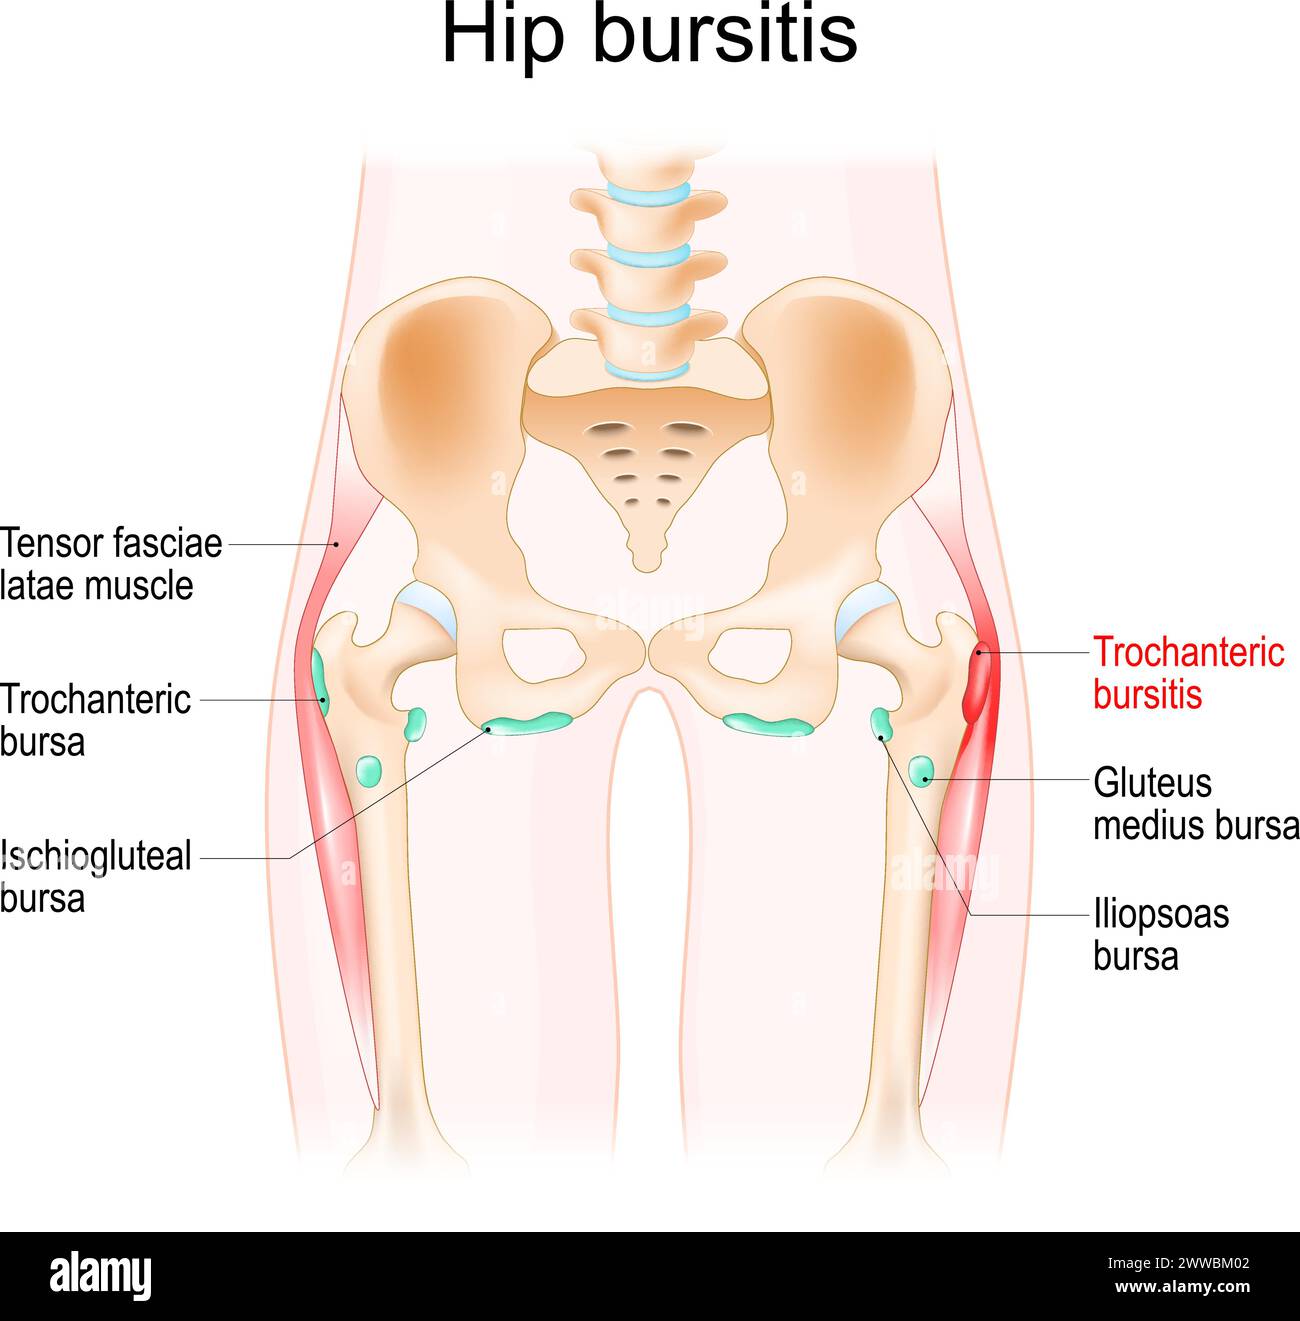 Hüftbursitis. Muskeln, Synovialbursas und Knochen einer menschlichen Hüfte. Trochantere Bursitis. Realistische Vektordarstellung Stock Vektor